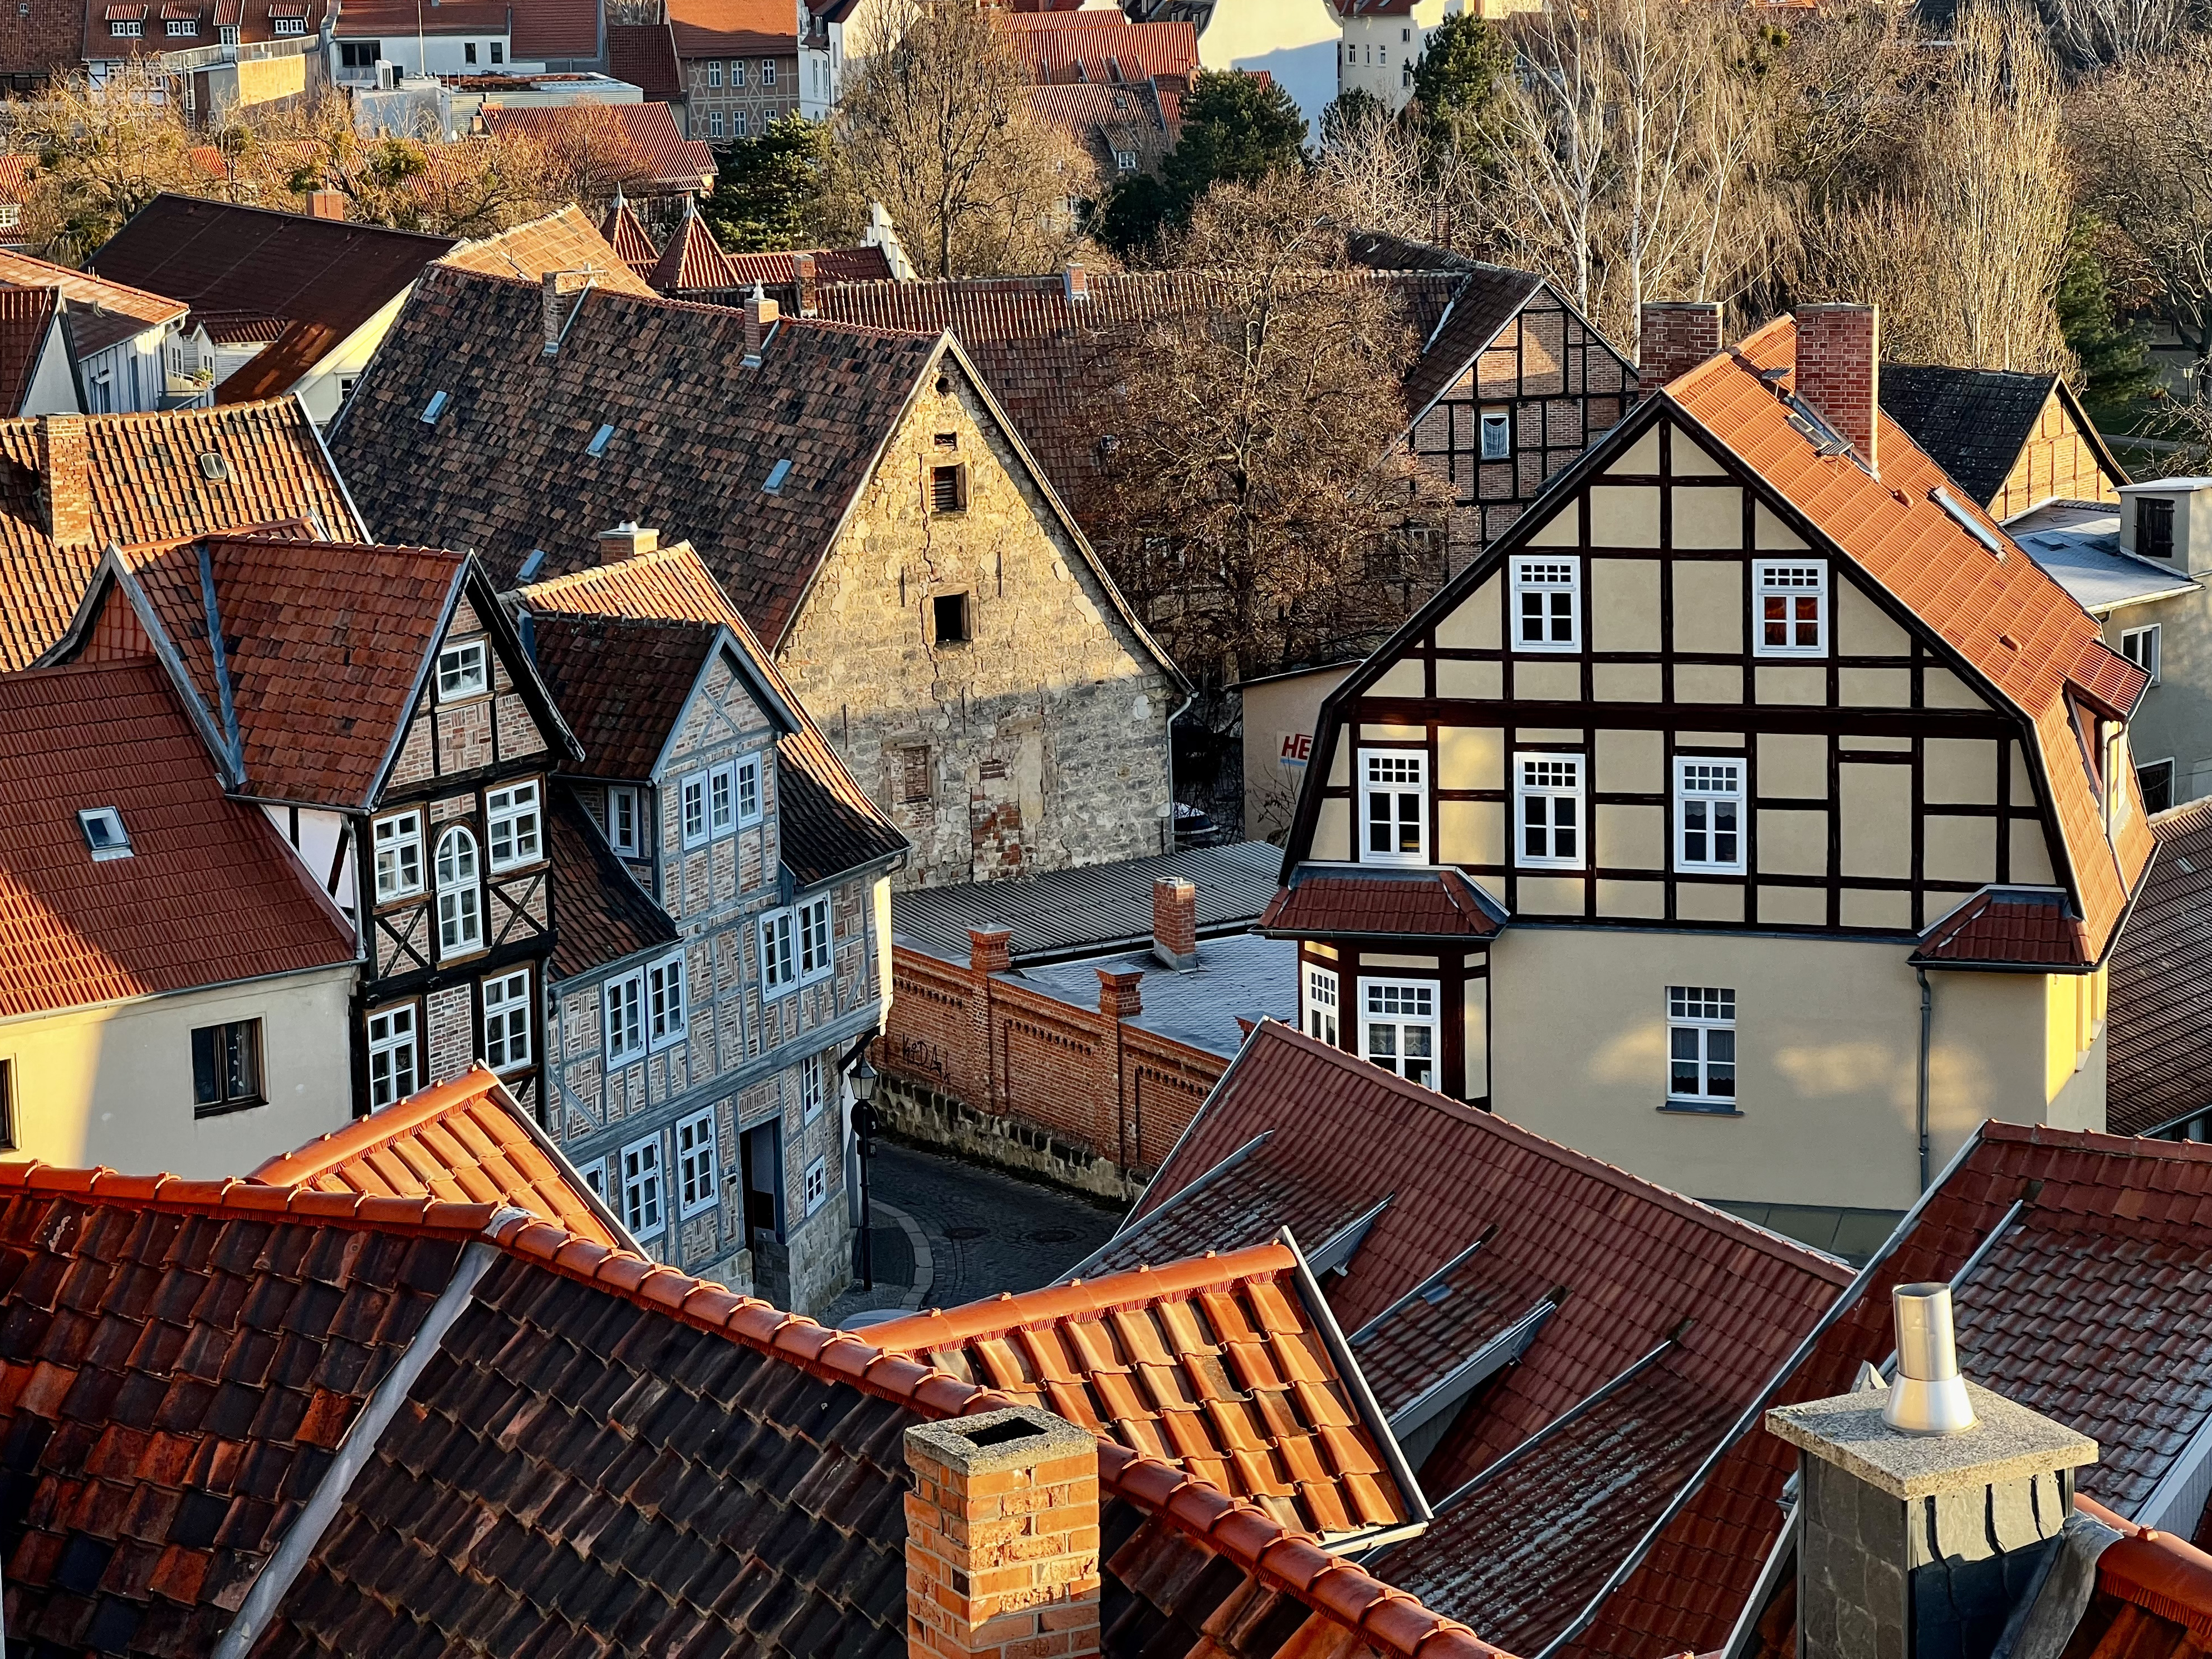 Menschen in umliegenden Städten wie Quedlinburg nehmen an jährlichen Traditionen teil